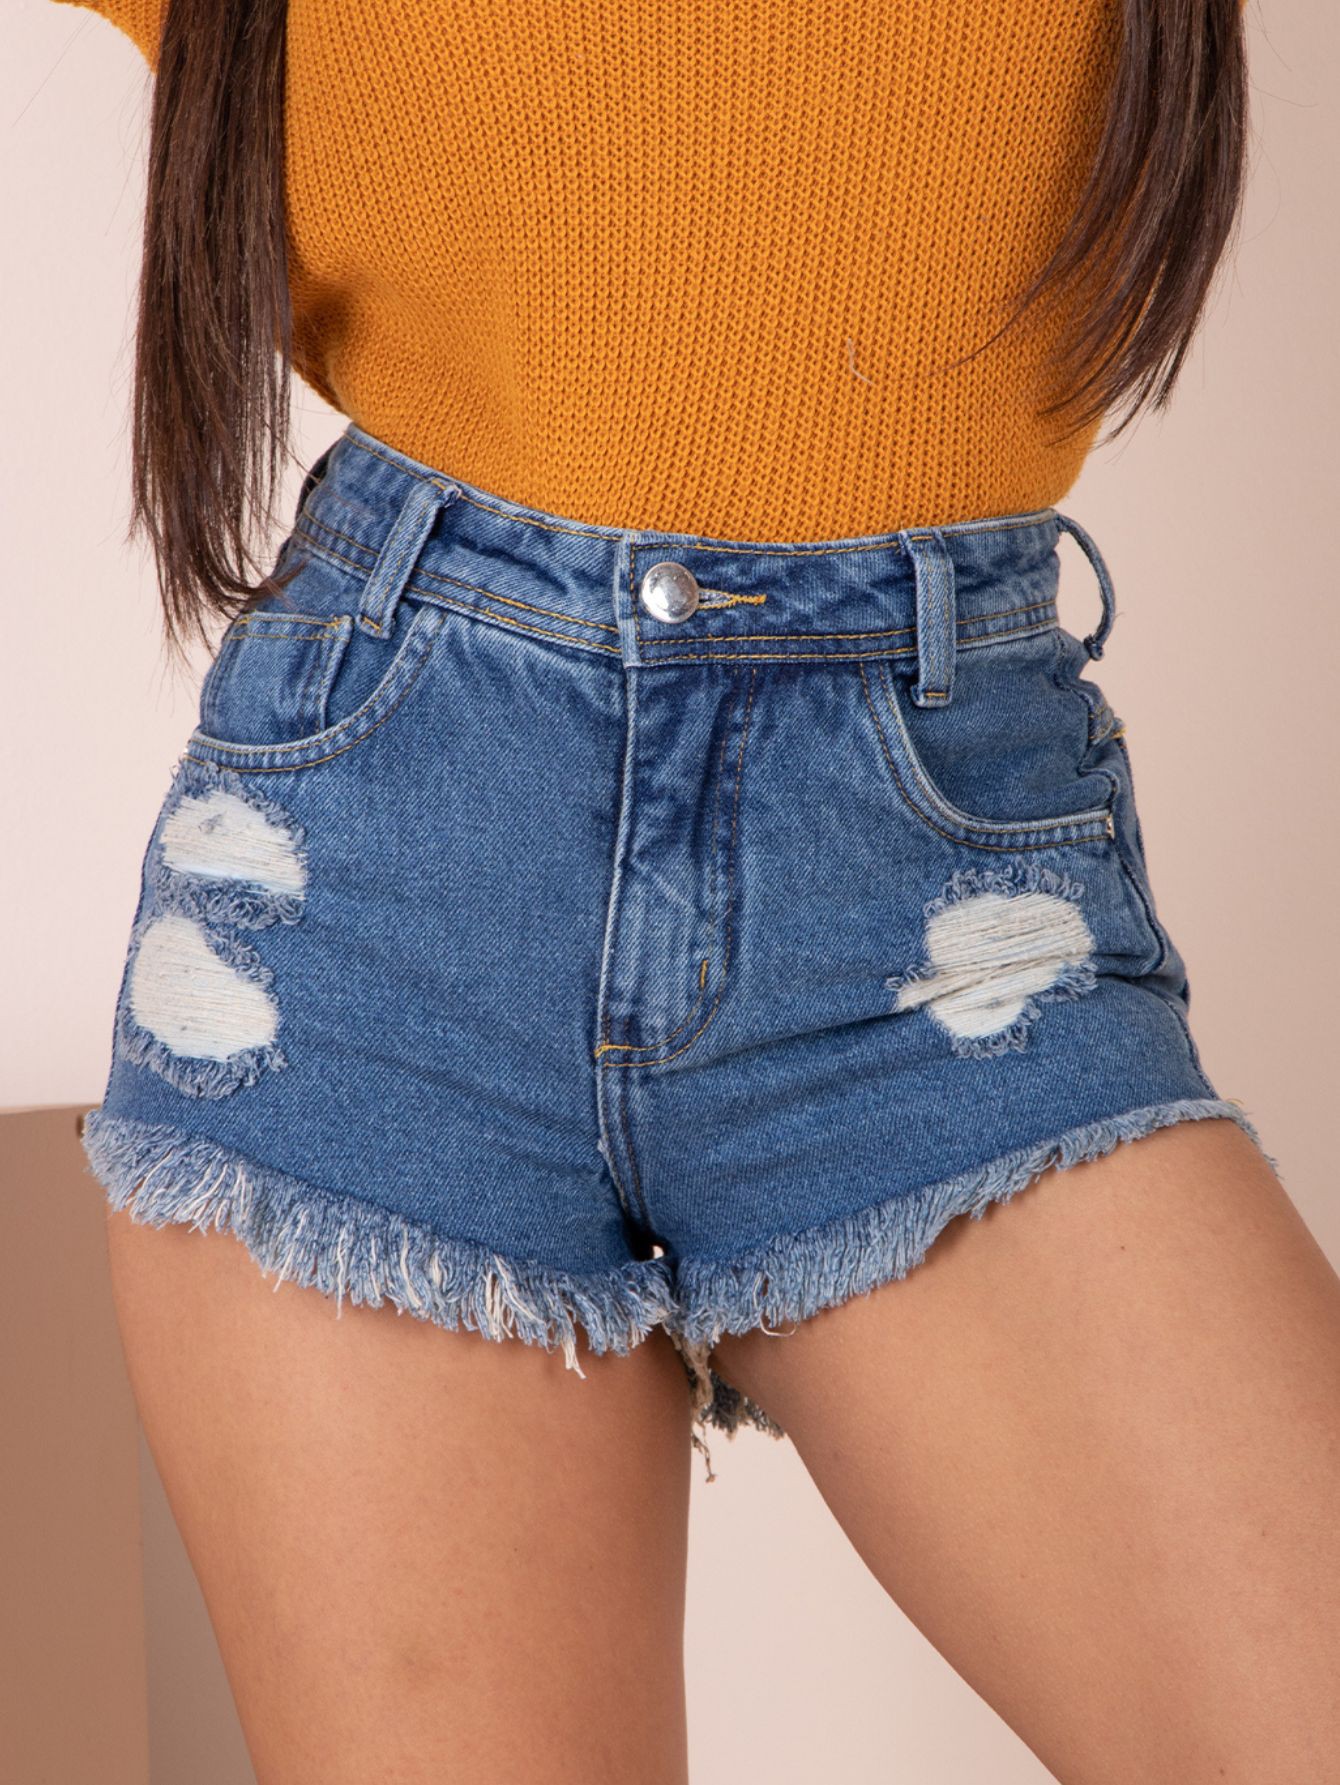 Short Jeans Feminino Cintura Alta Desfiado Bamborra